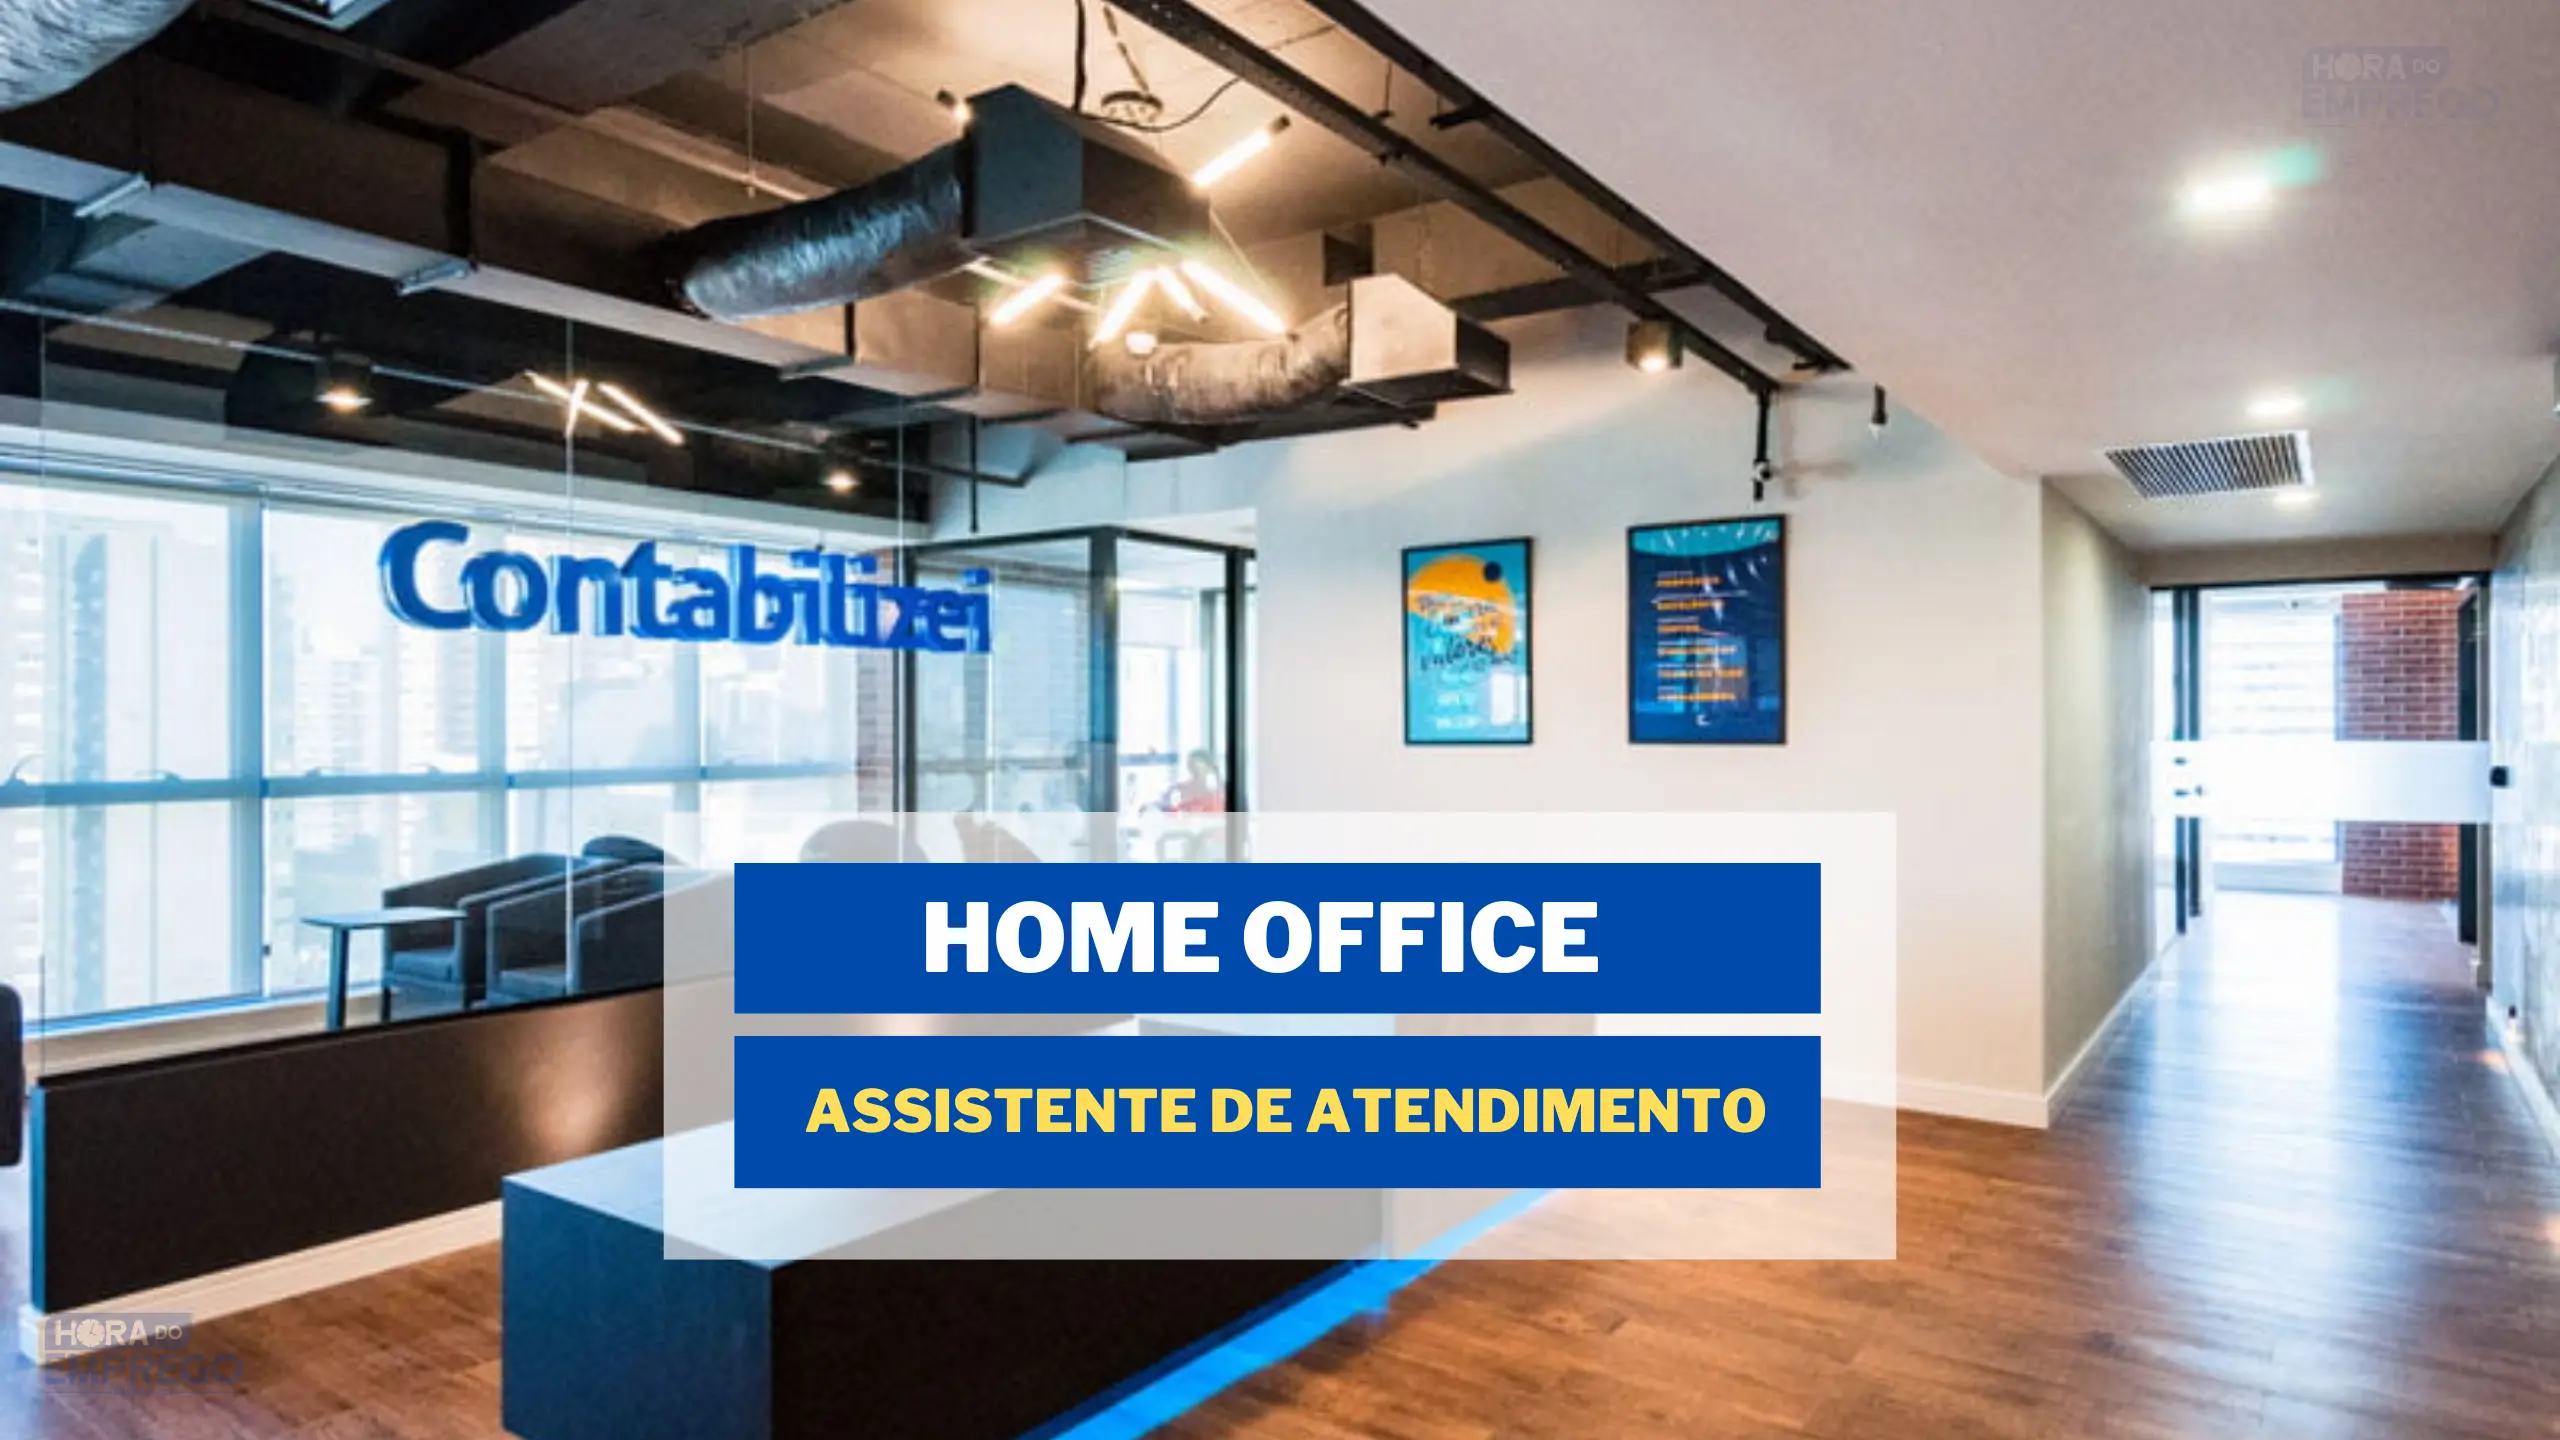 Trabalhe de Casa: A Contabilizei está contratando para HOME OFFICE Assistente de Atendimento